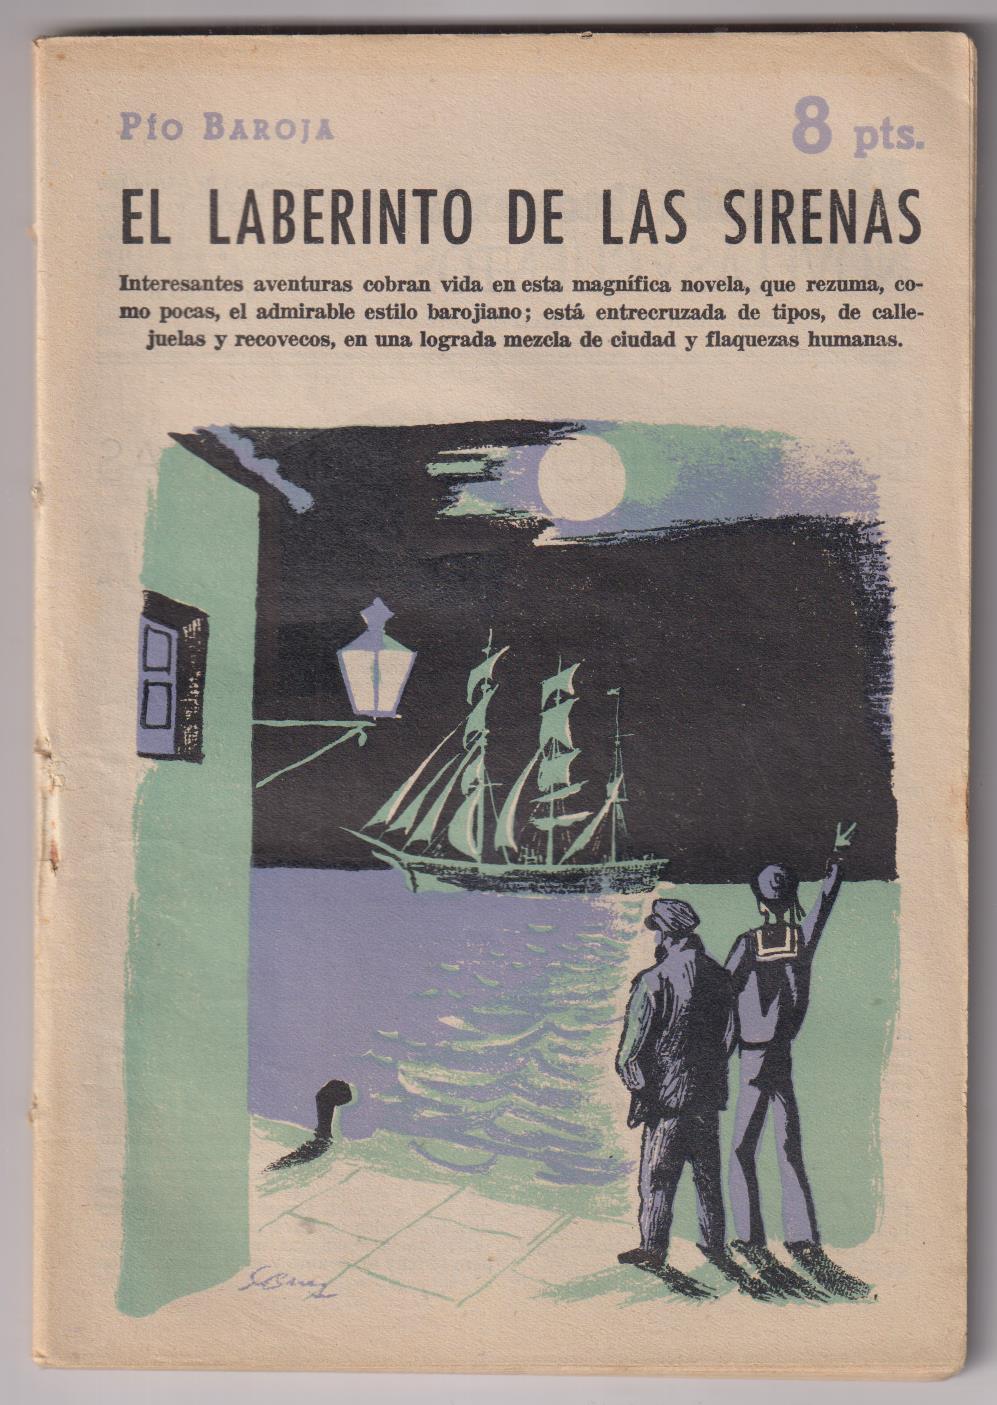 Revista Literaria Novelas y Cuentos nº 1447. El laberinto de las sirenas por Pío Baroja. 1959